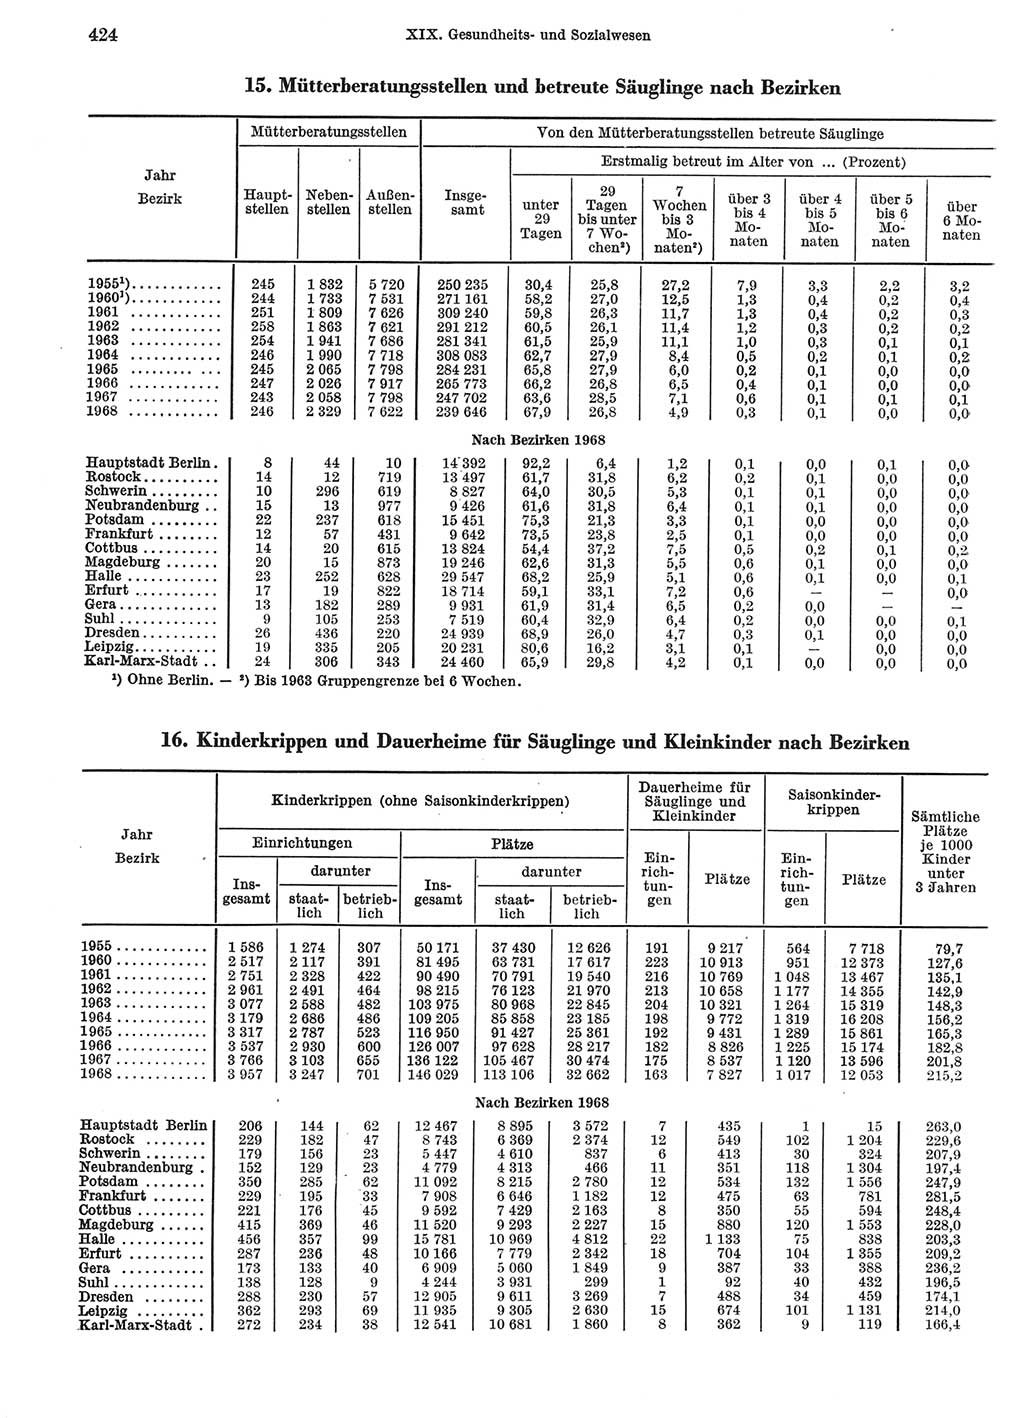 Statistisches Jahrbuch der Deutschen Demokratischen Republik (DDR) 1969, Seite 424 (Stat. Jb. DDR 1969, S. 424)